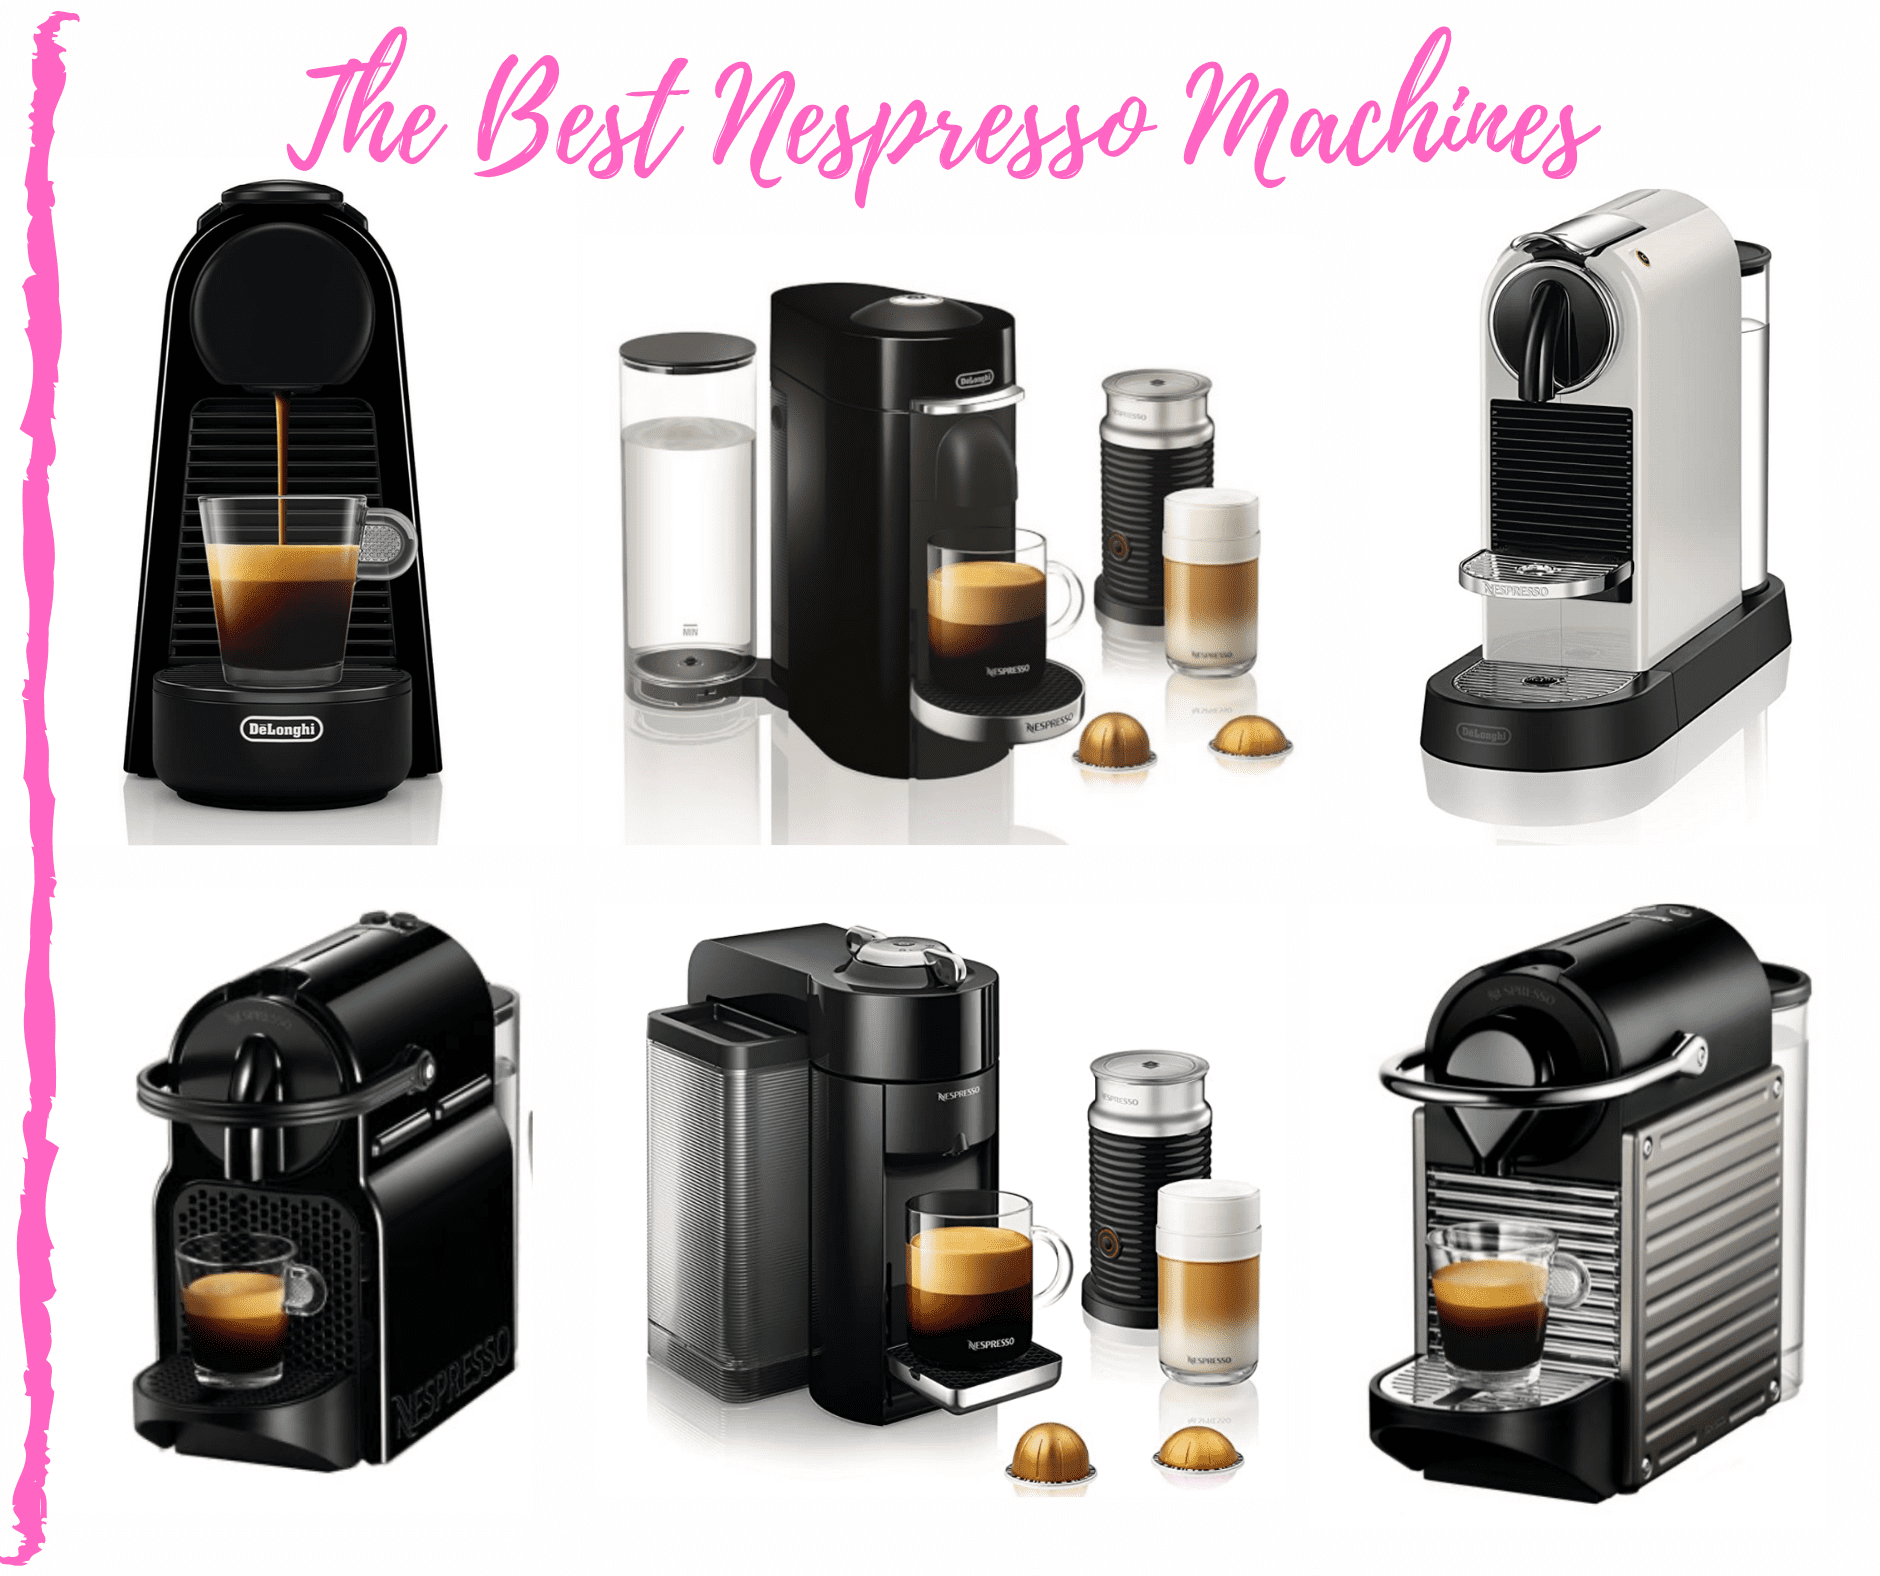 The Best Nespresso Machines